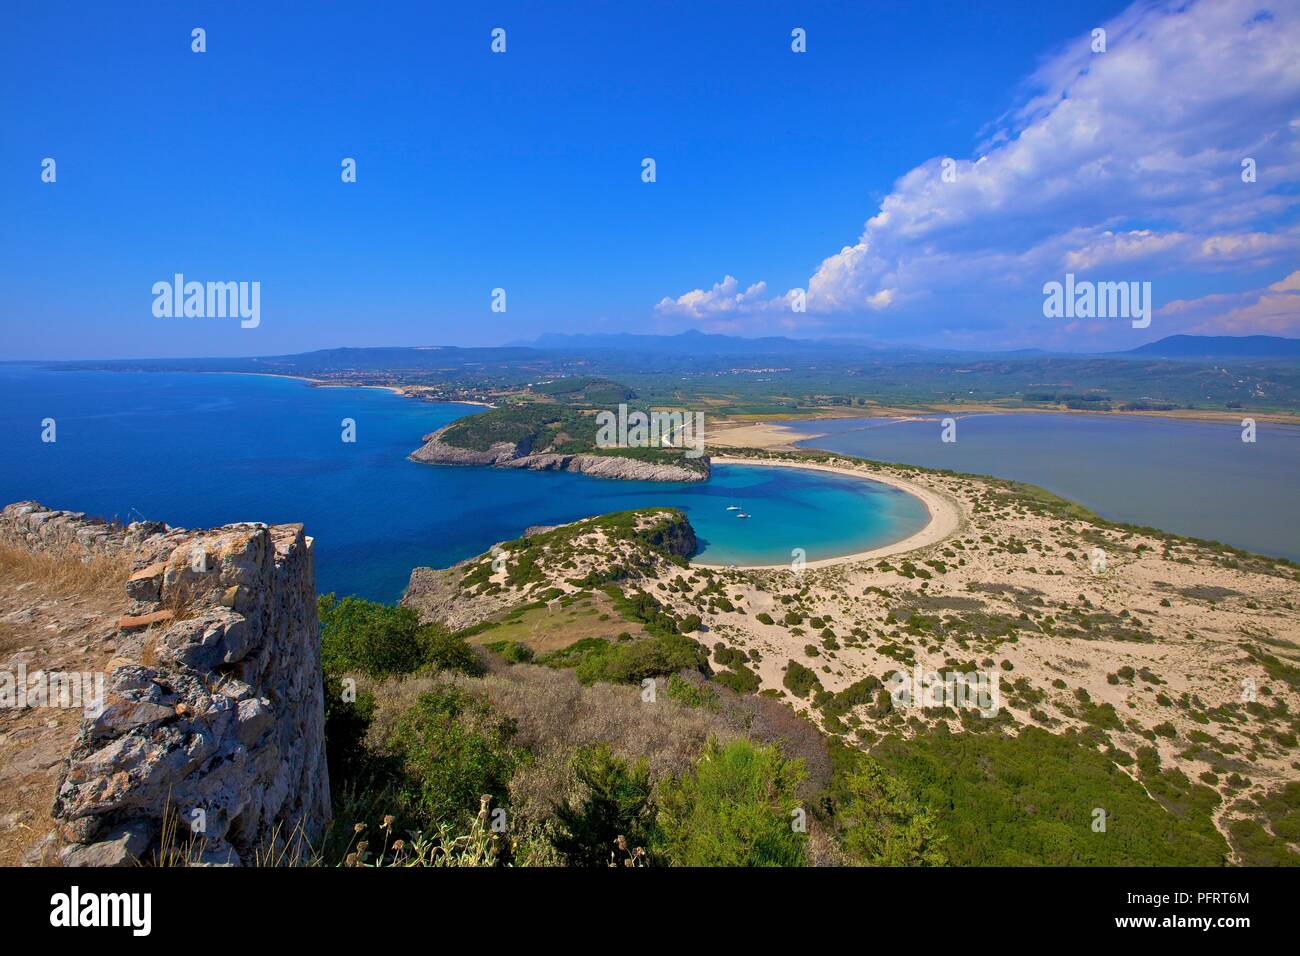 Voidokilia, Messinia, The Peloponnese, Greece, Southern Europe Stock Photo